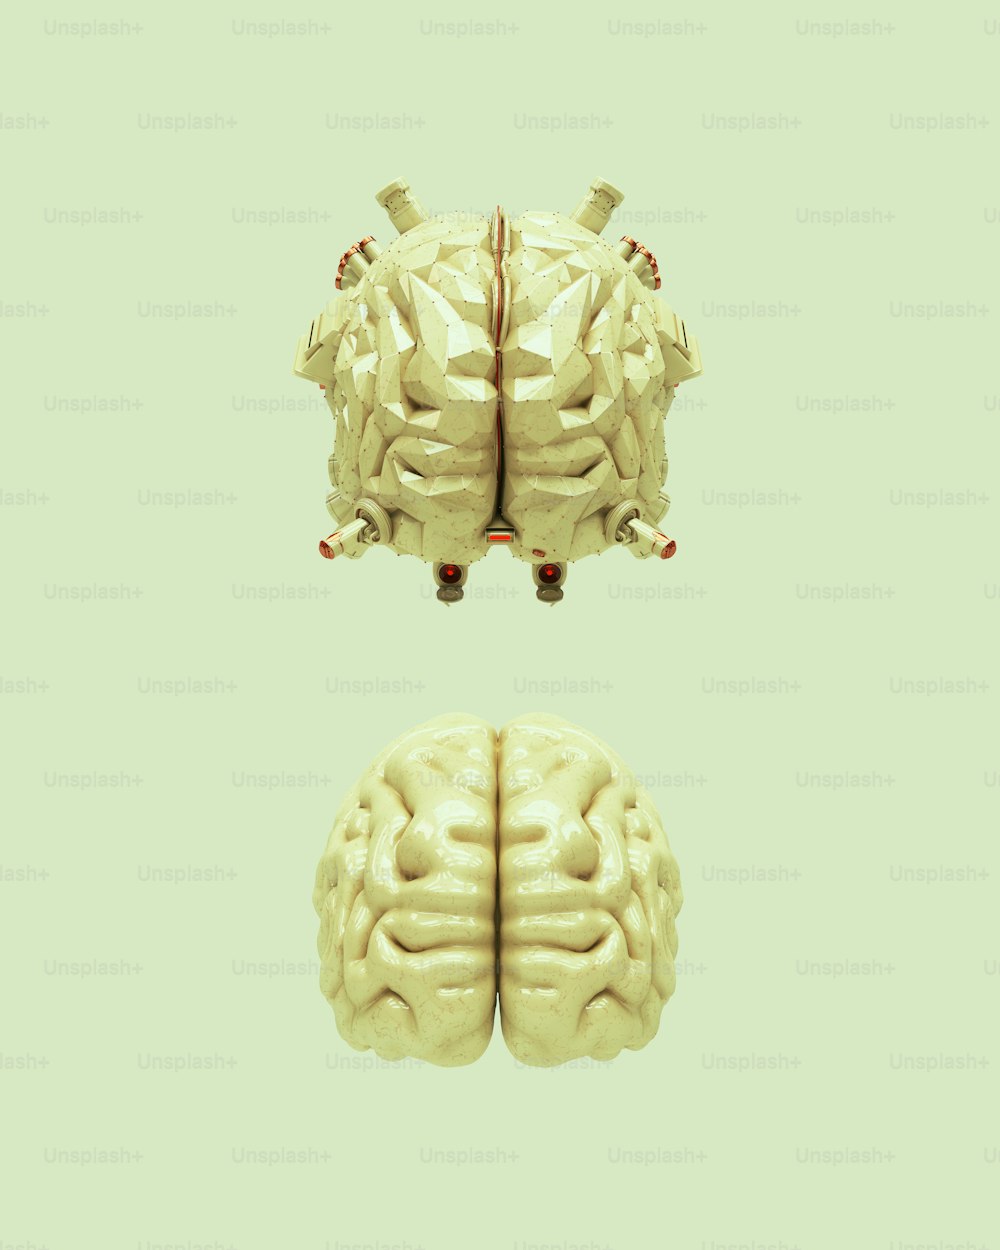 Dos imágenes del mismo cerebro humano